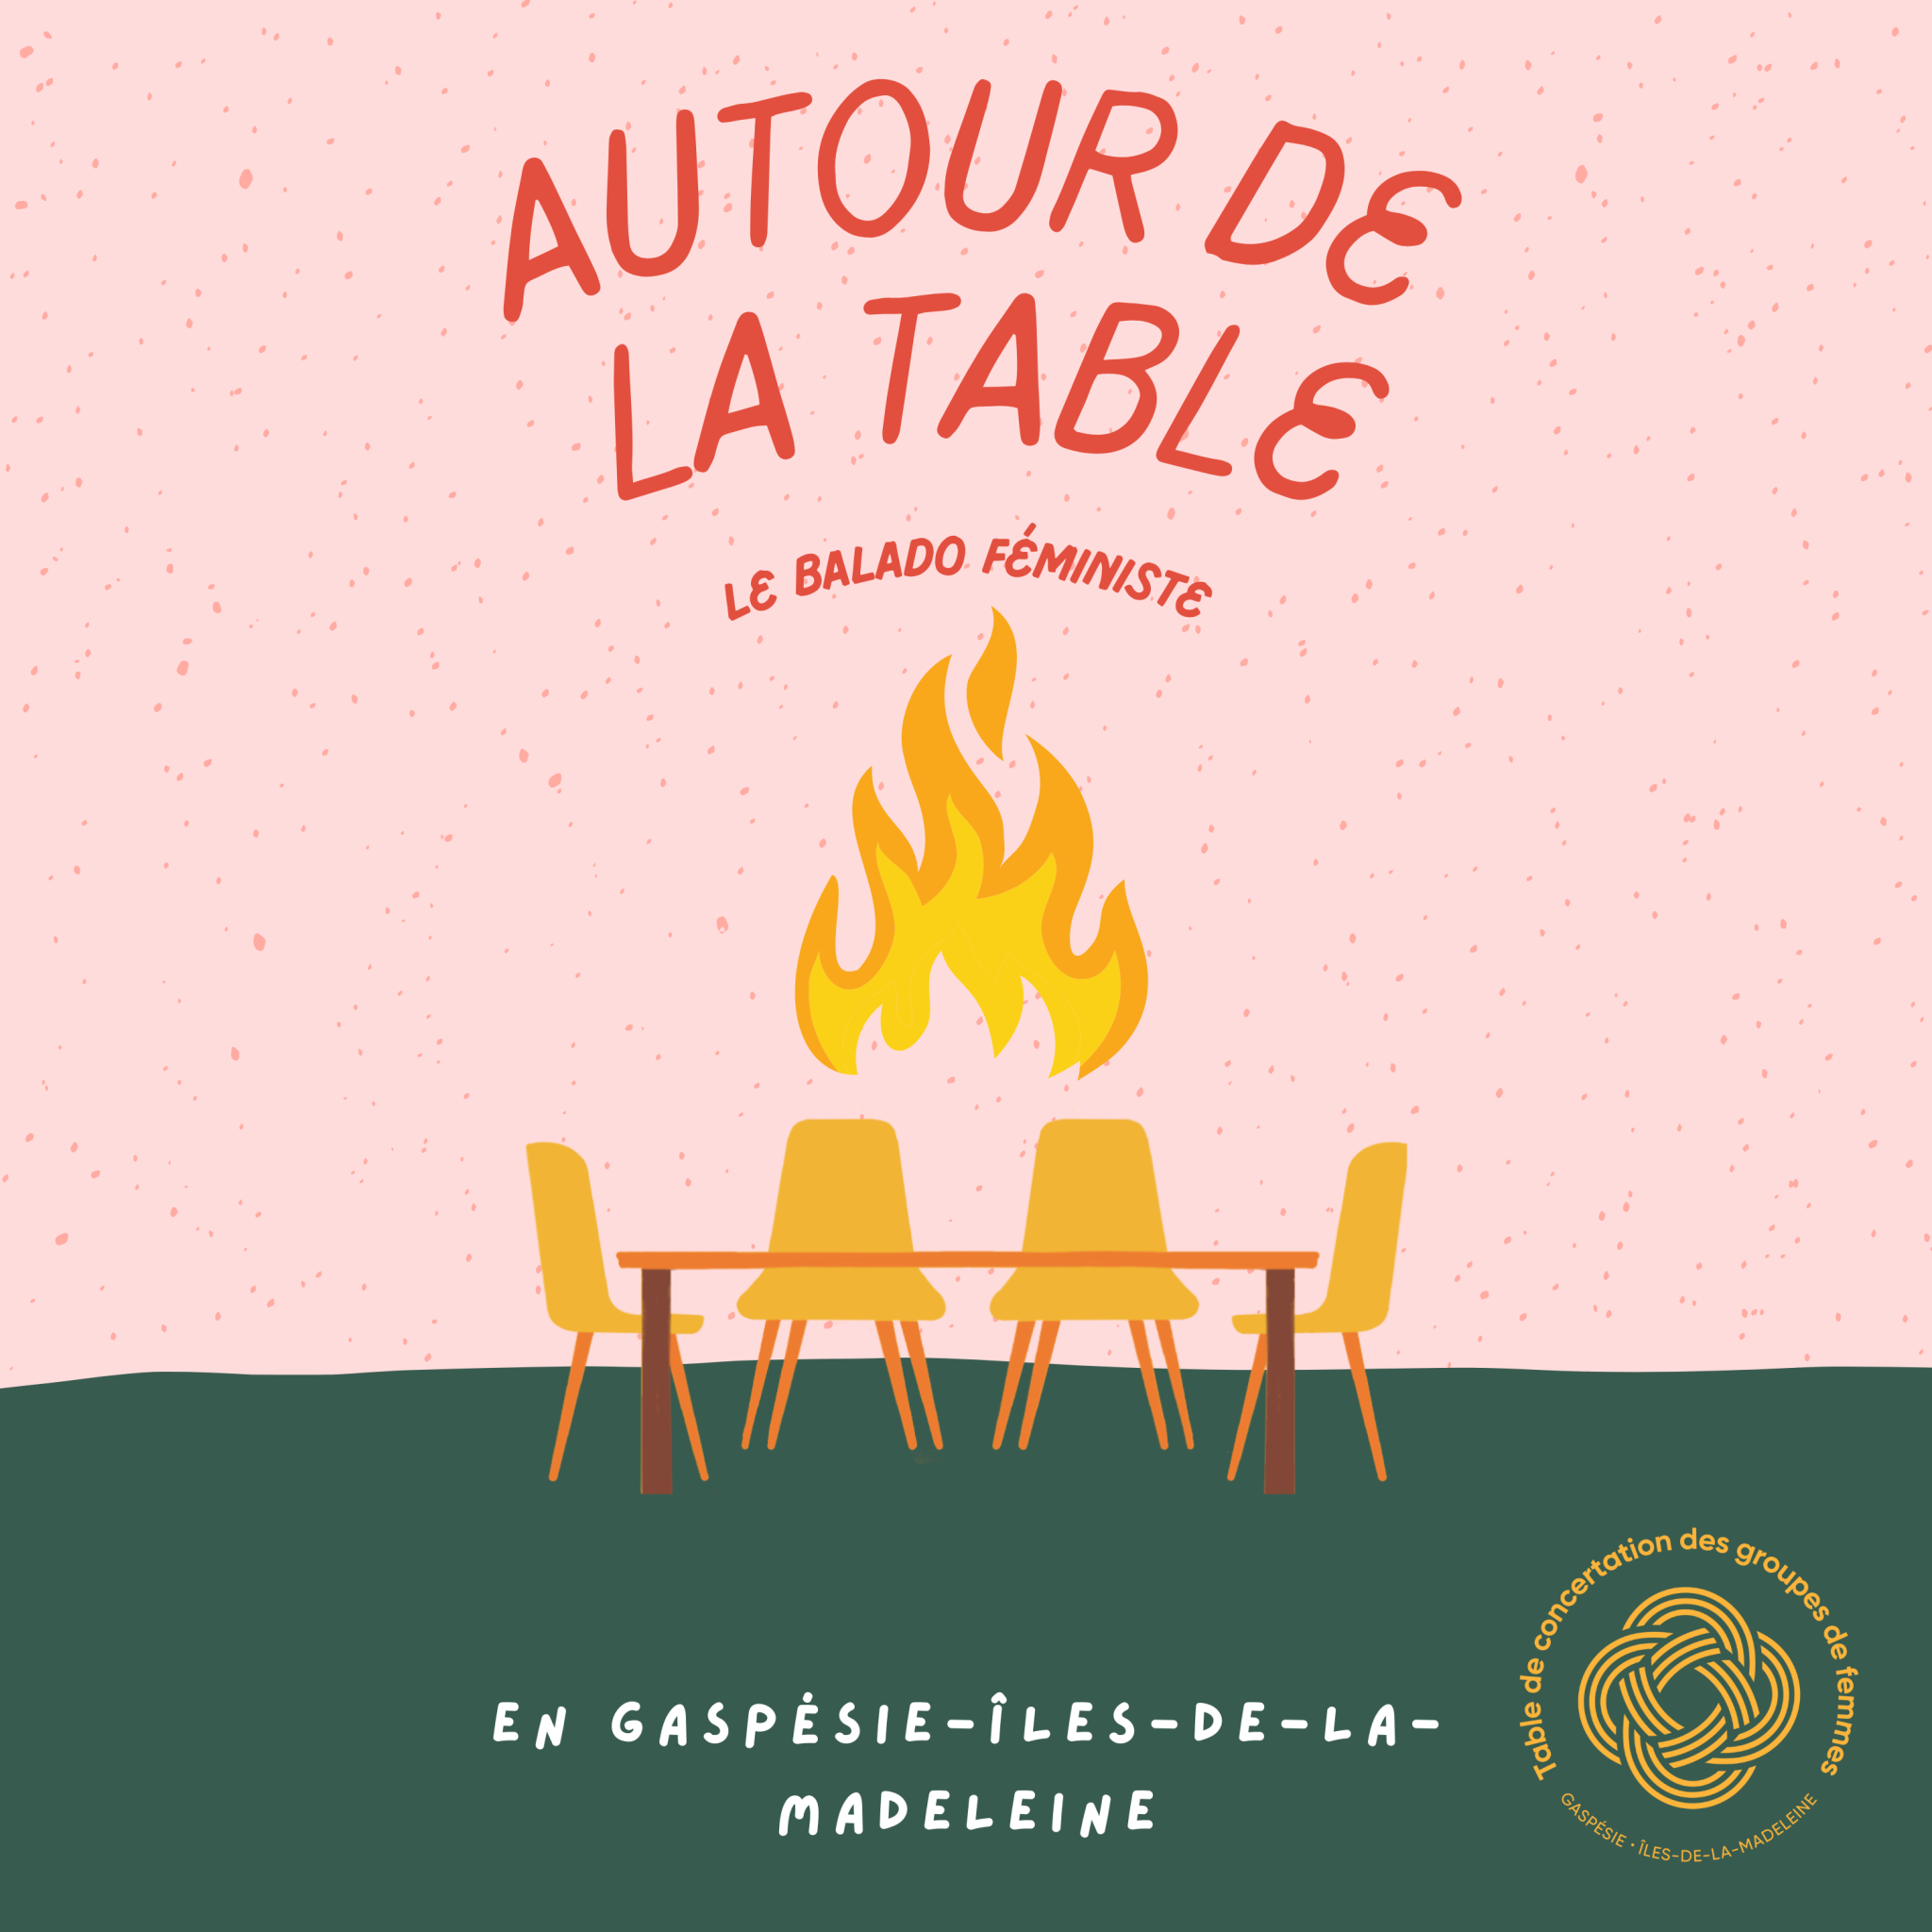 Une table et des chaises avec une image de feu au-dessus et le titre "Autour de la table, le balado féministe".